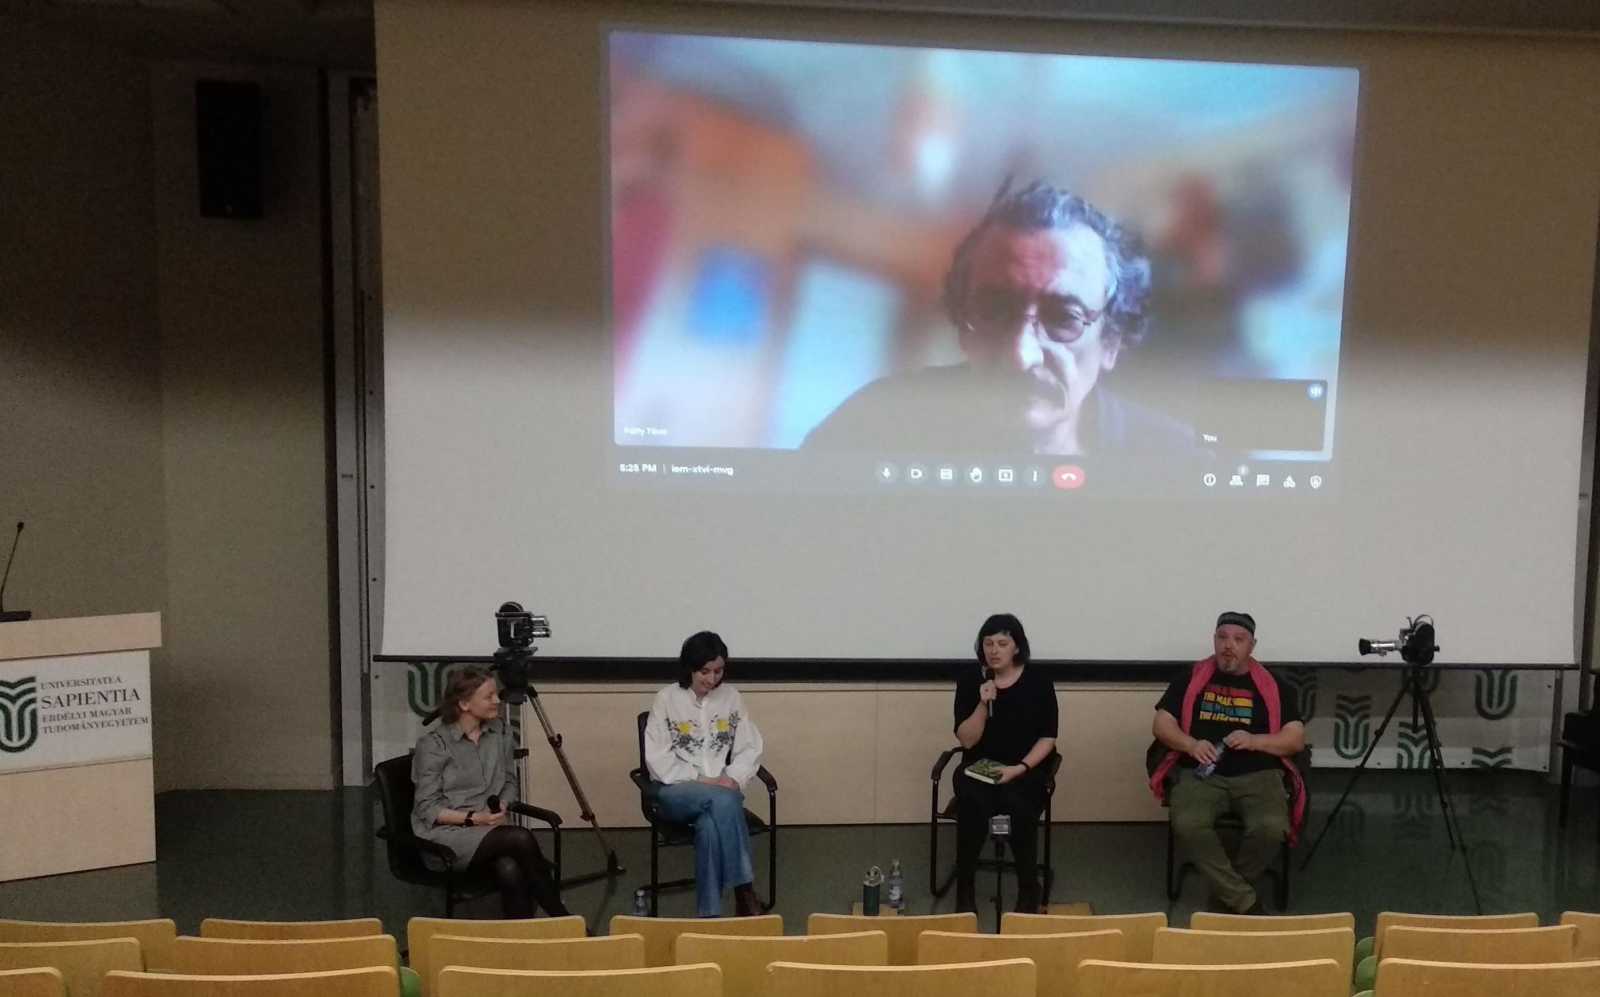 Balról jobbra: Pál Emőke, Farkas Boglárka, Blos-Jáni Melinda, Lakatos Róbert, háttérben Pálffy Tibor a vetítést követő kerekasztal-beszélgetésen | A szerző felvétele